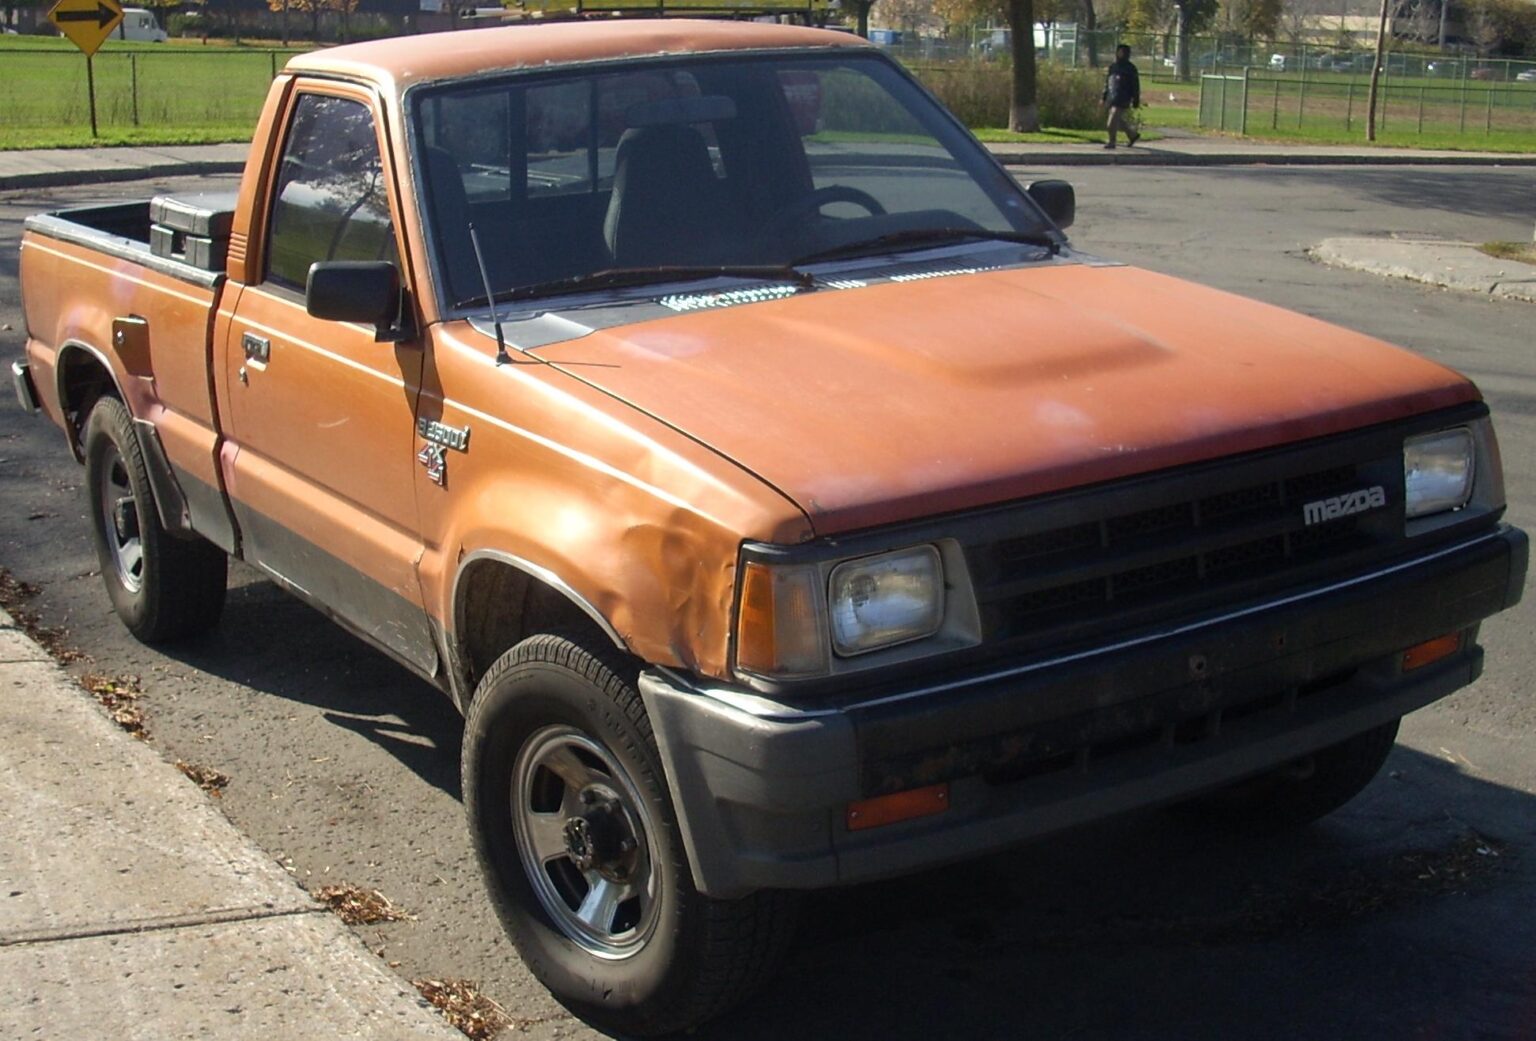 MazdaB2600-1989c